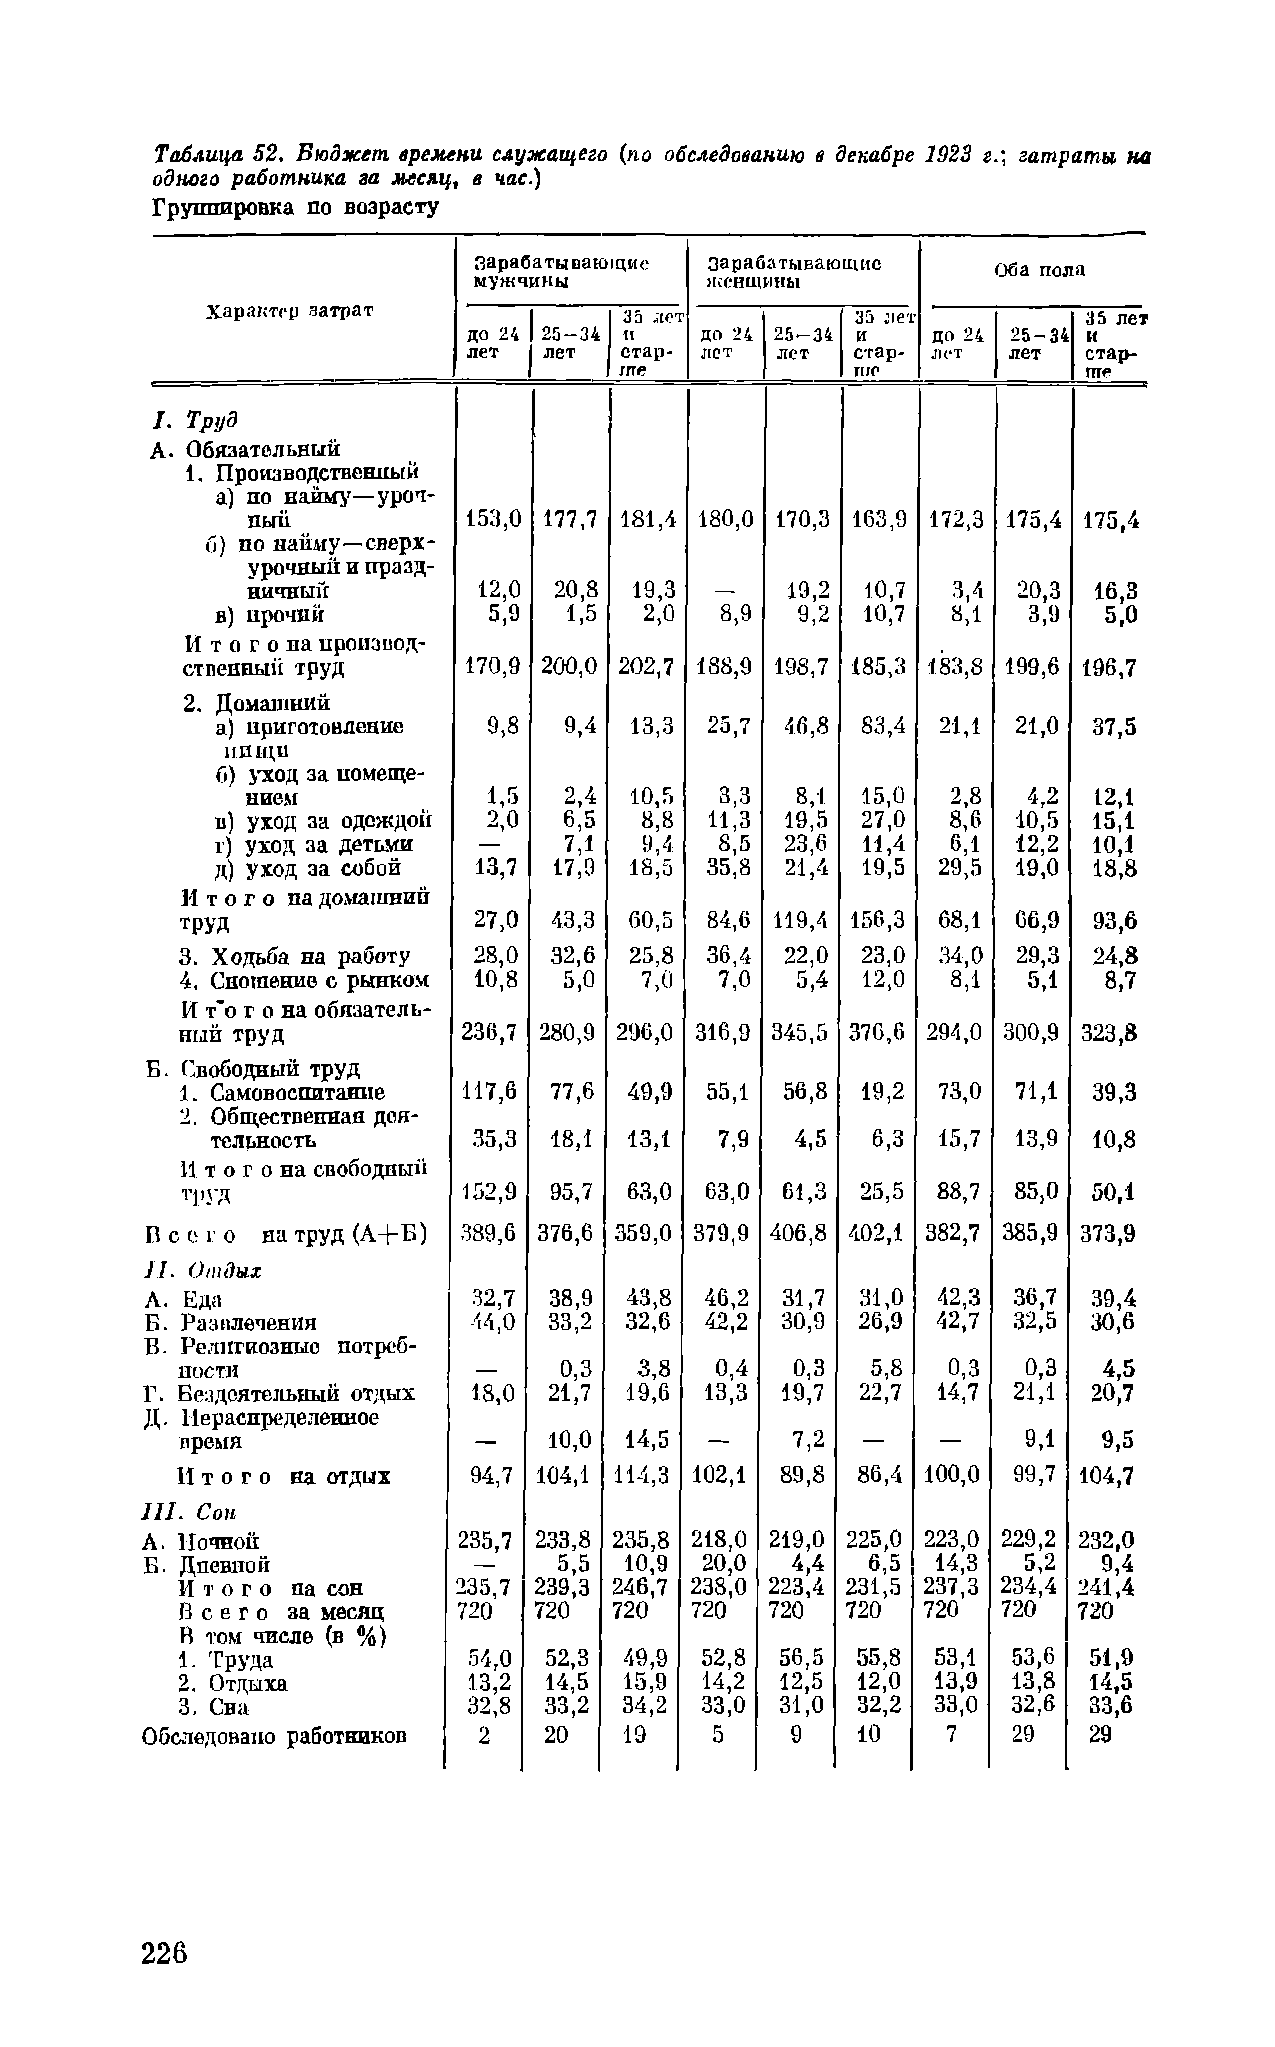 Таблица 52, Бюджет времени служащего (по обследованию в декабре 1923 г. затраты на одного работника за месяц, в час.) Группировка ш возрасту
